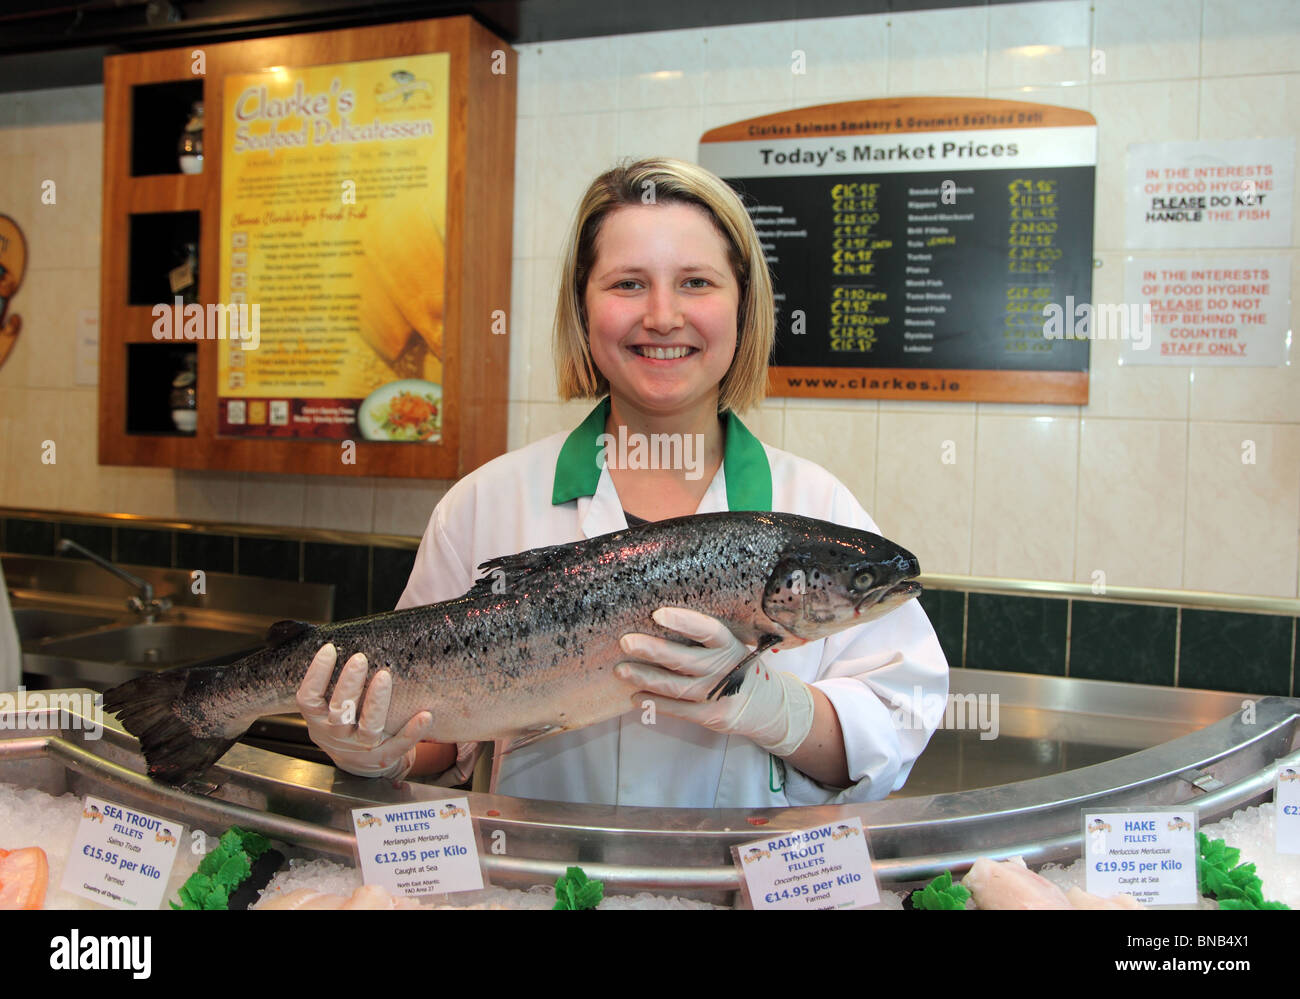 Clarke's salmone selvatico pescheria, Ballina, Co. Mayo, polacco assistente vendite Paula Foto Stock